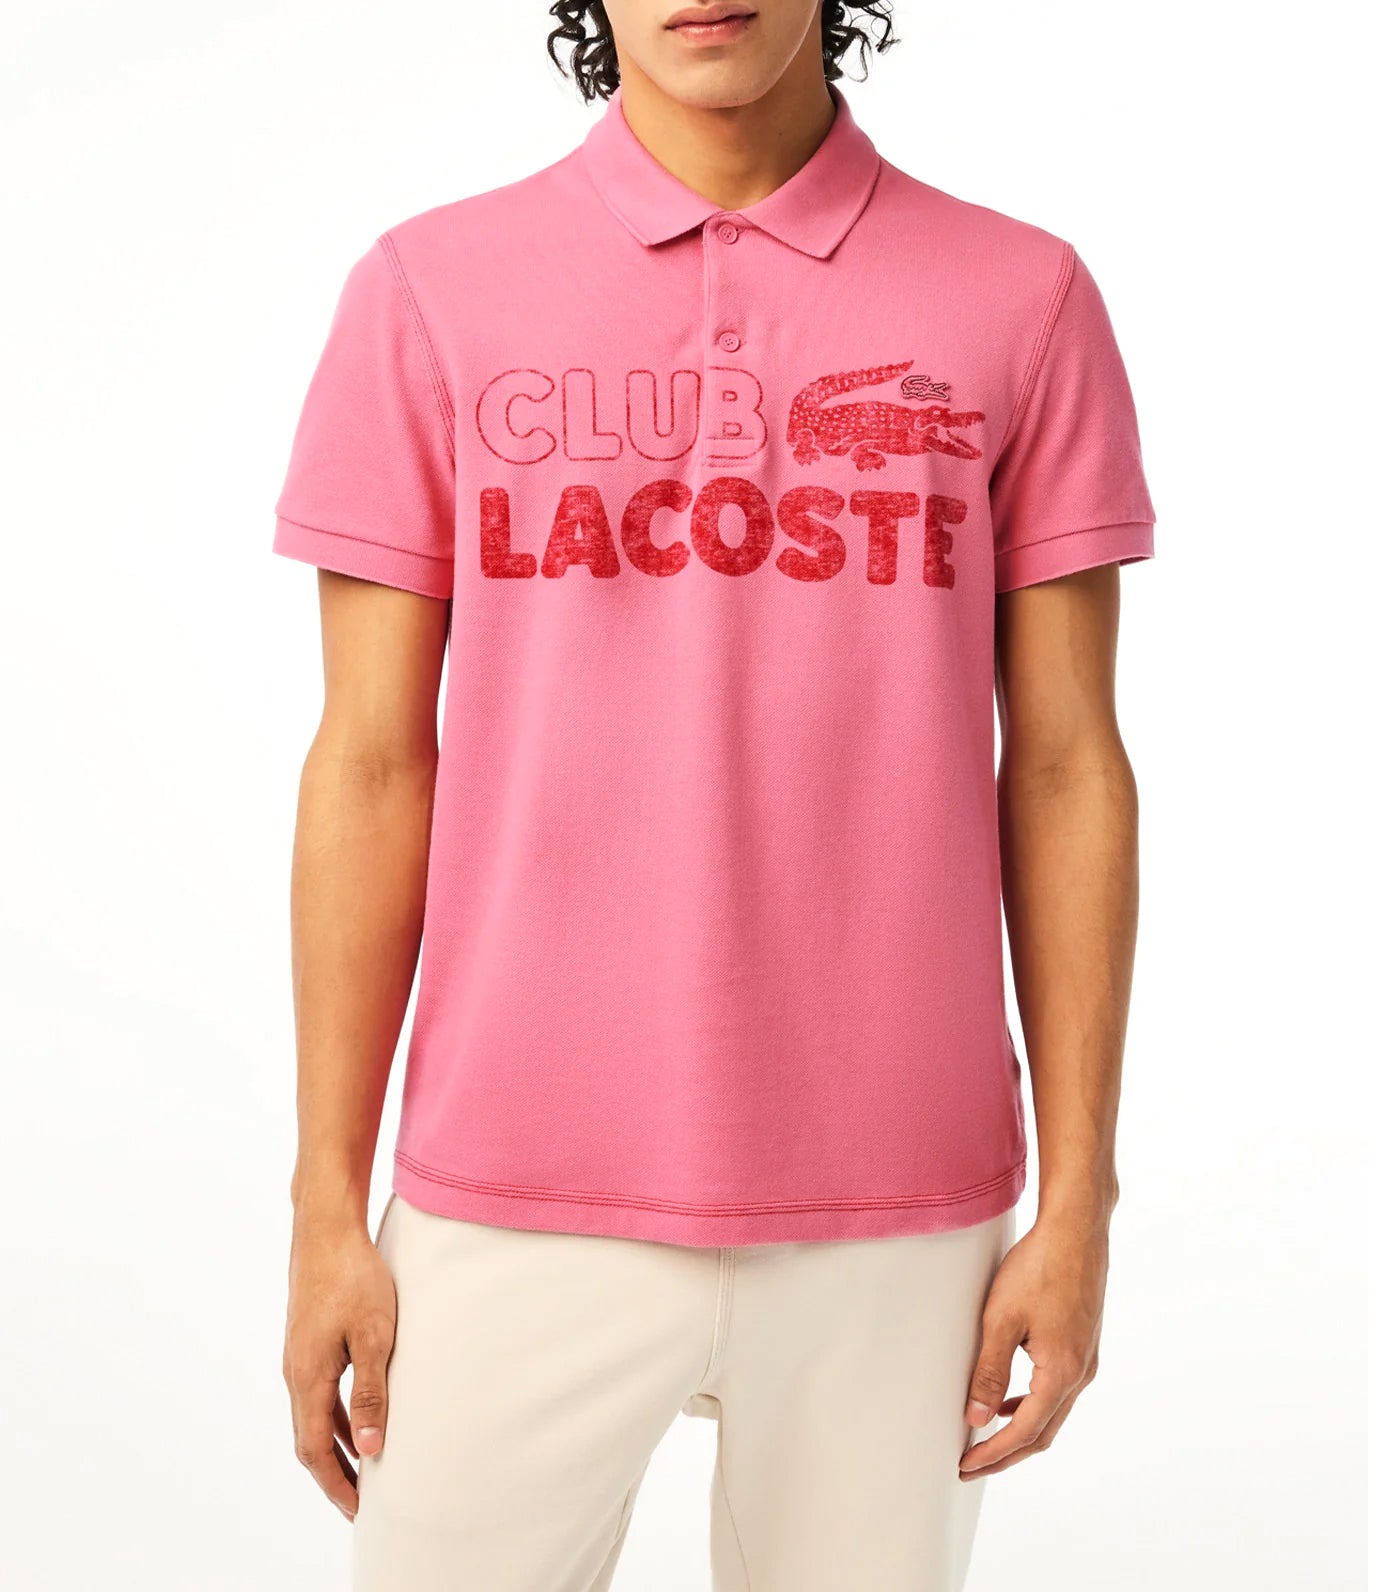 Men’s Organic Cotton Printed Polo Shirt Reseda Pink